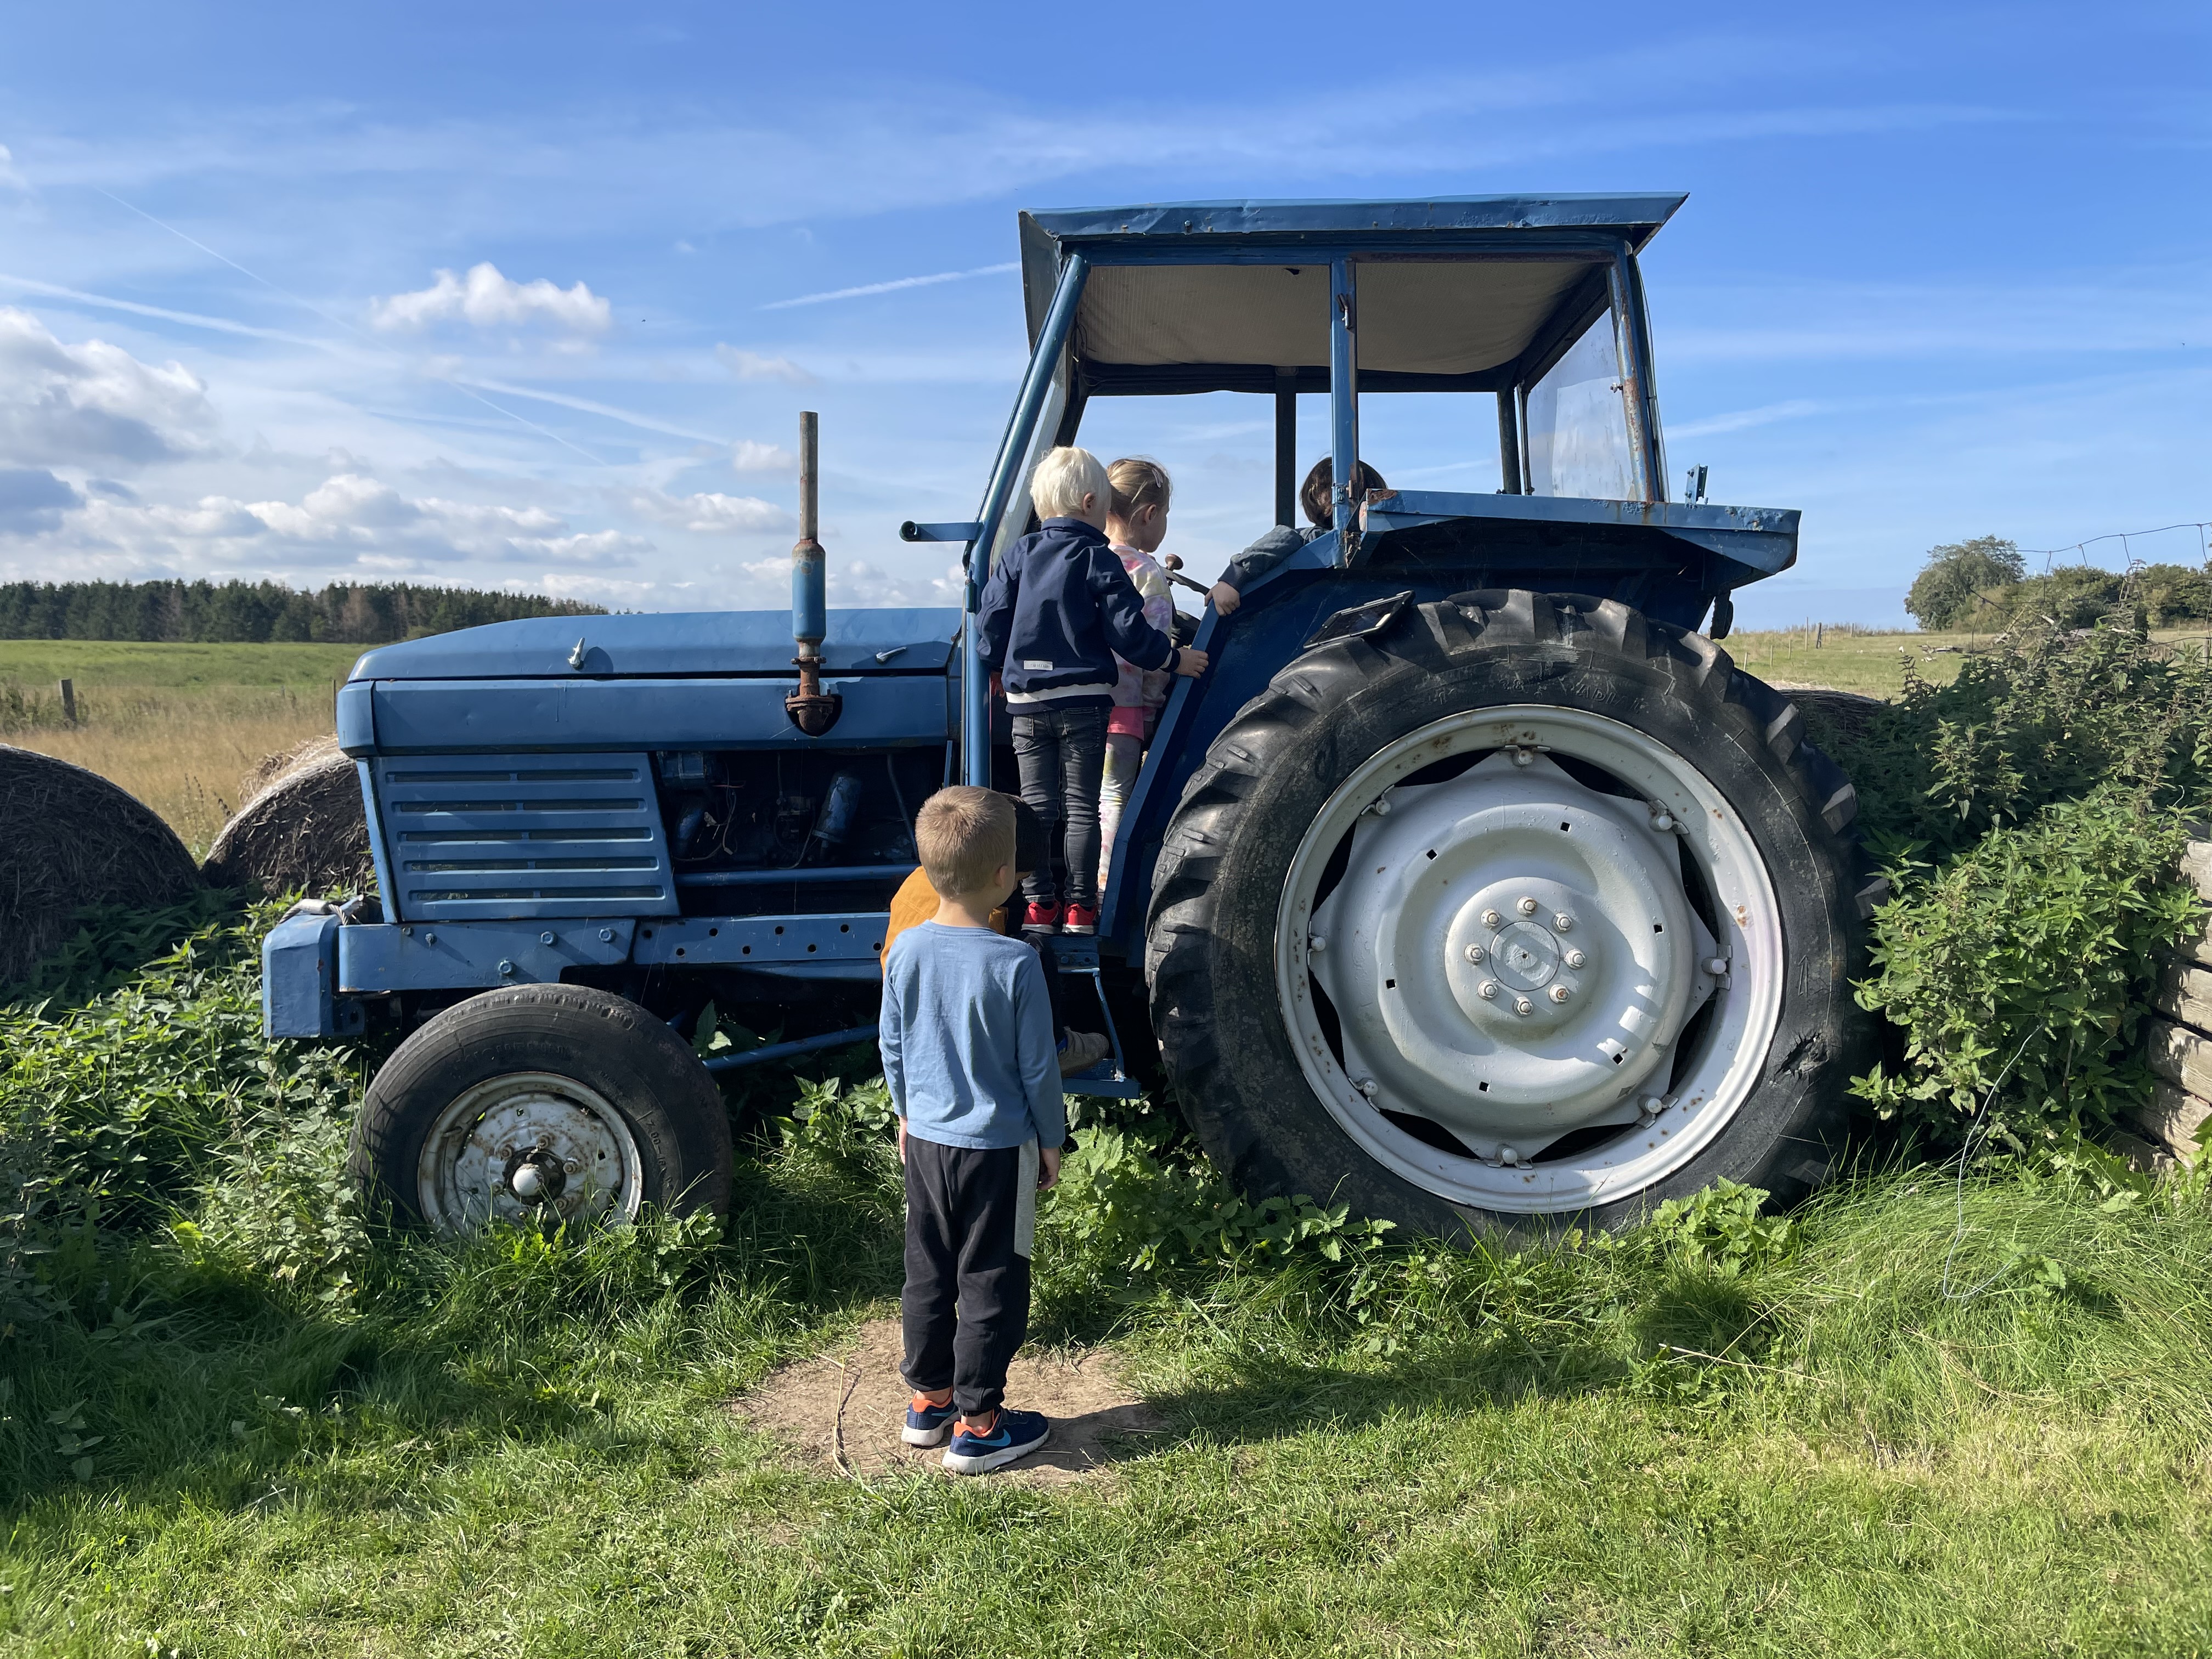 Billedet viser en gammel traktor, som børnene klatrer på.